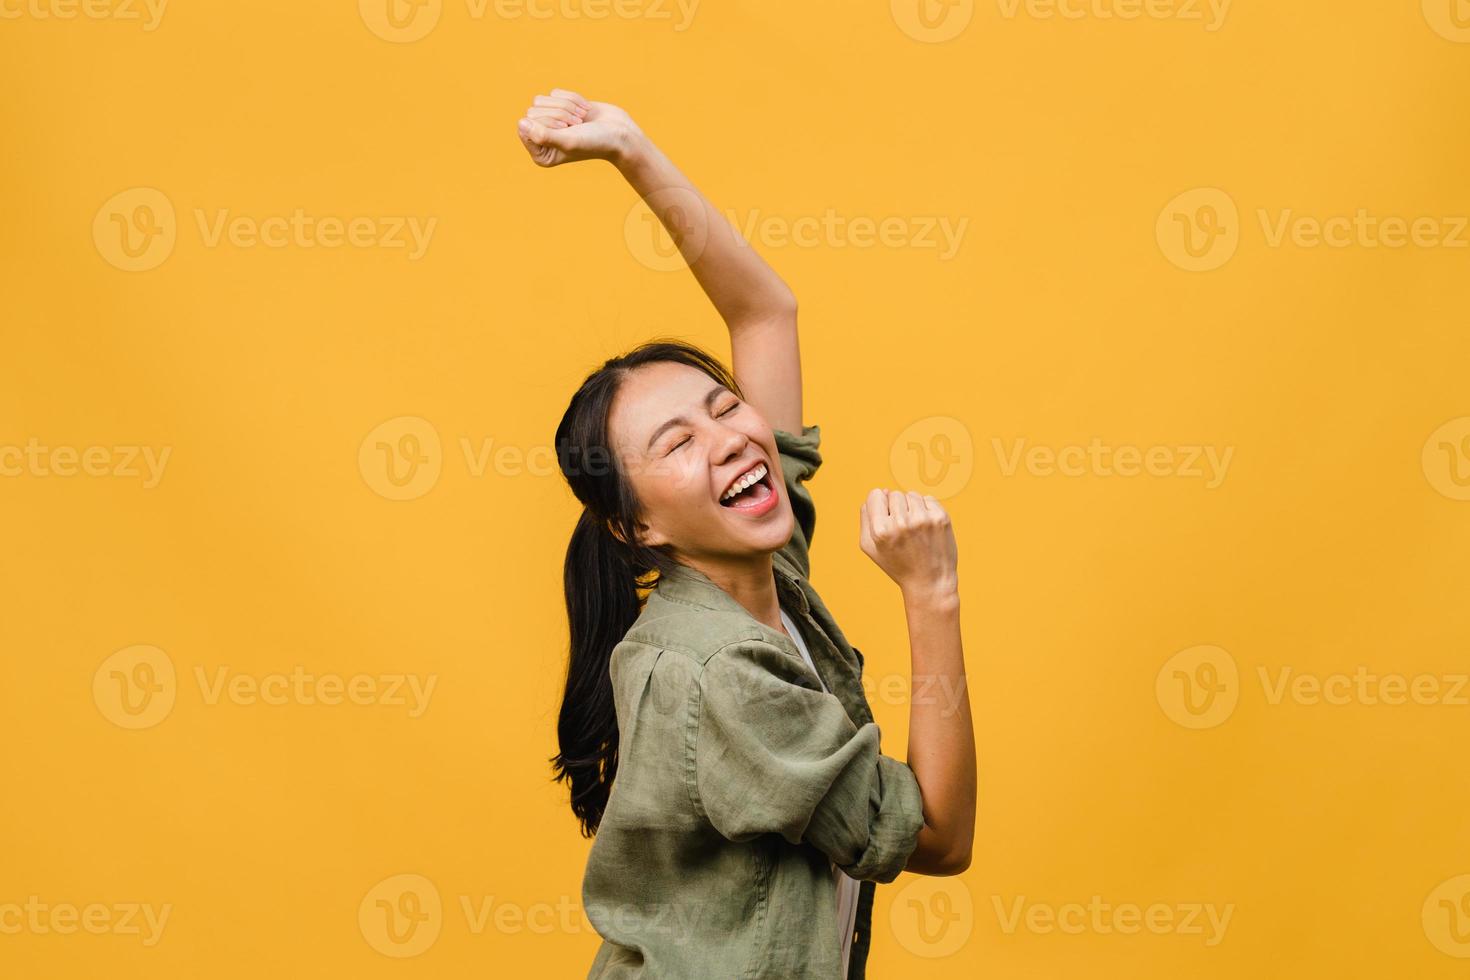 jovencita de asia con expresión positiva, alegre y emocionante, vestida con ropa casual sobre fondo amarillo con espacio vacío. feliz adorable mujer alegre se regocija con el éxito. concepto de expresión facial. foto